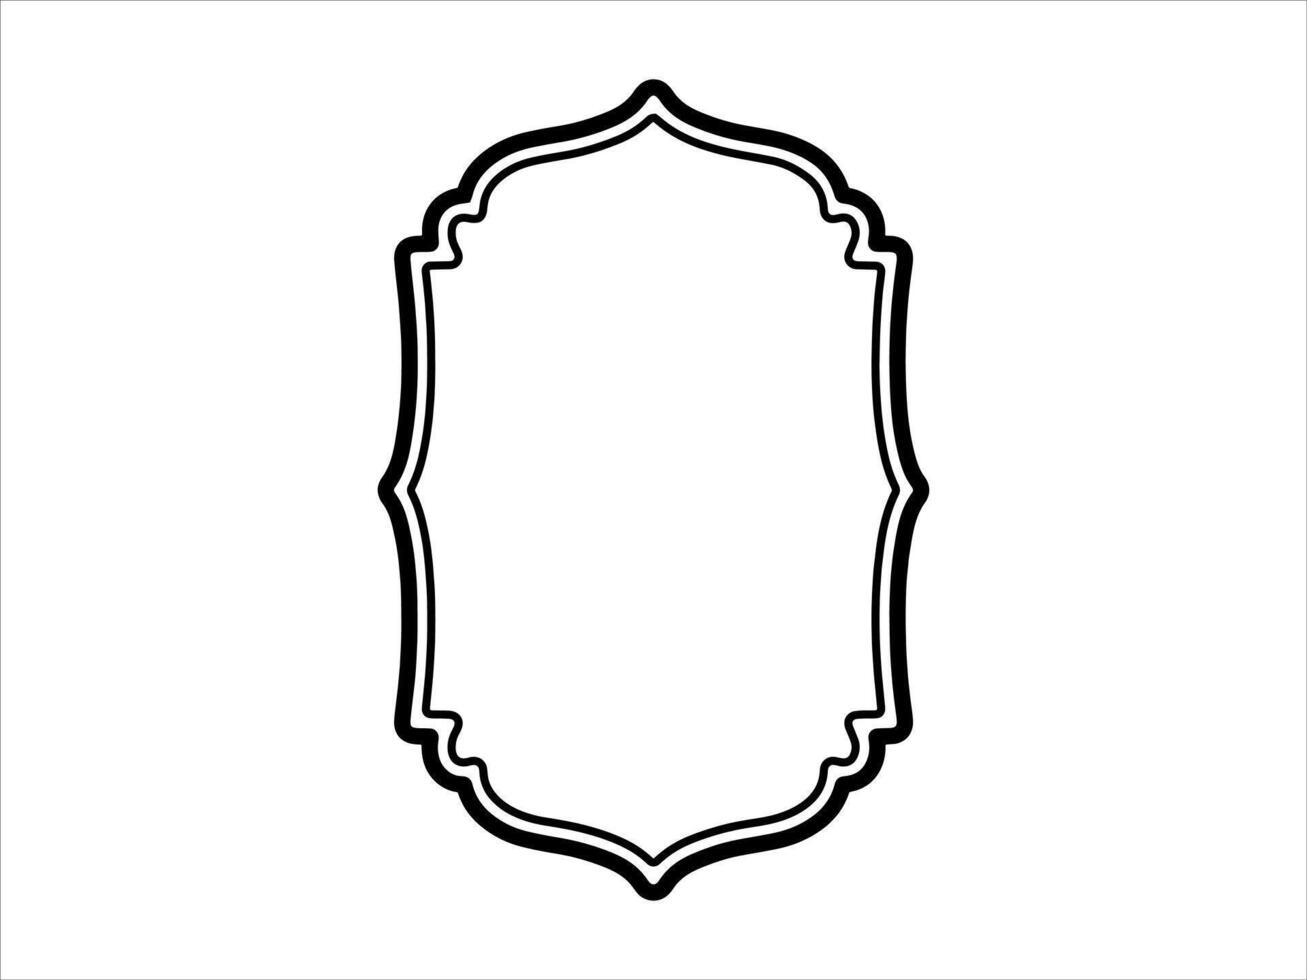 Hand gezeichnet islamisch Rahmen Illustration vektor